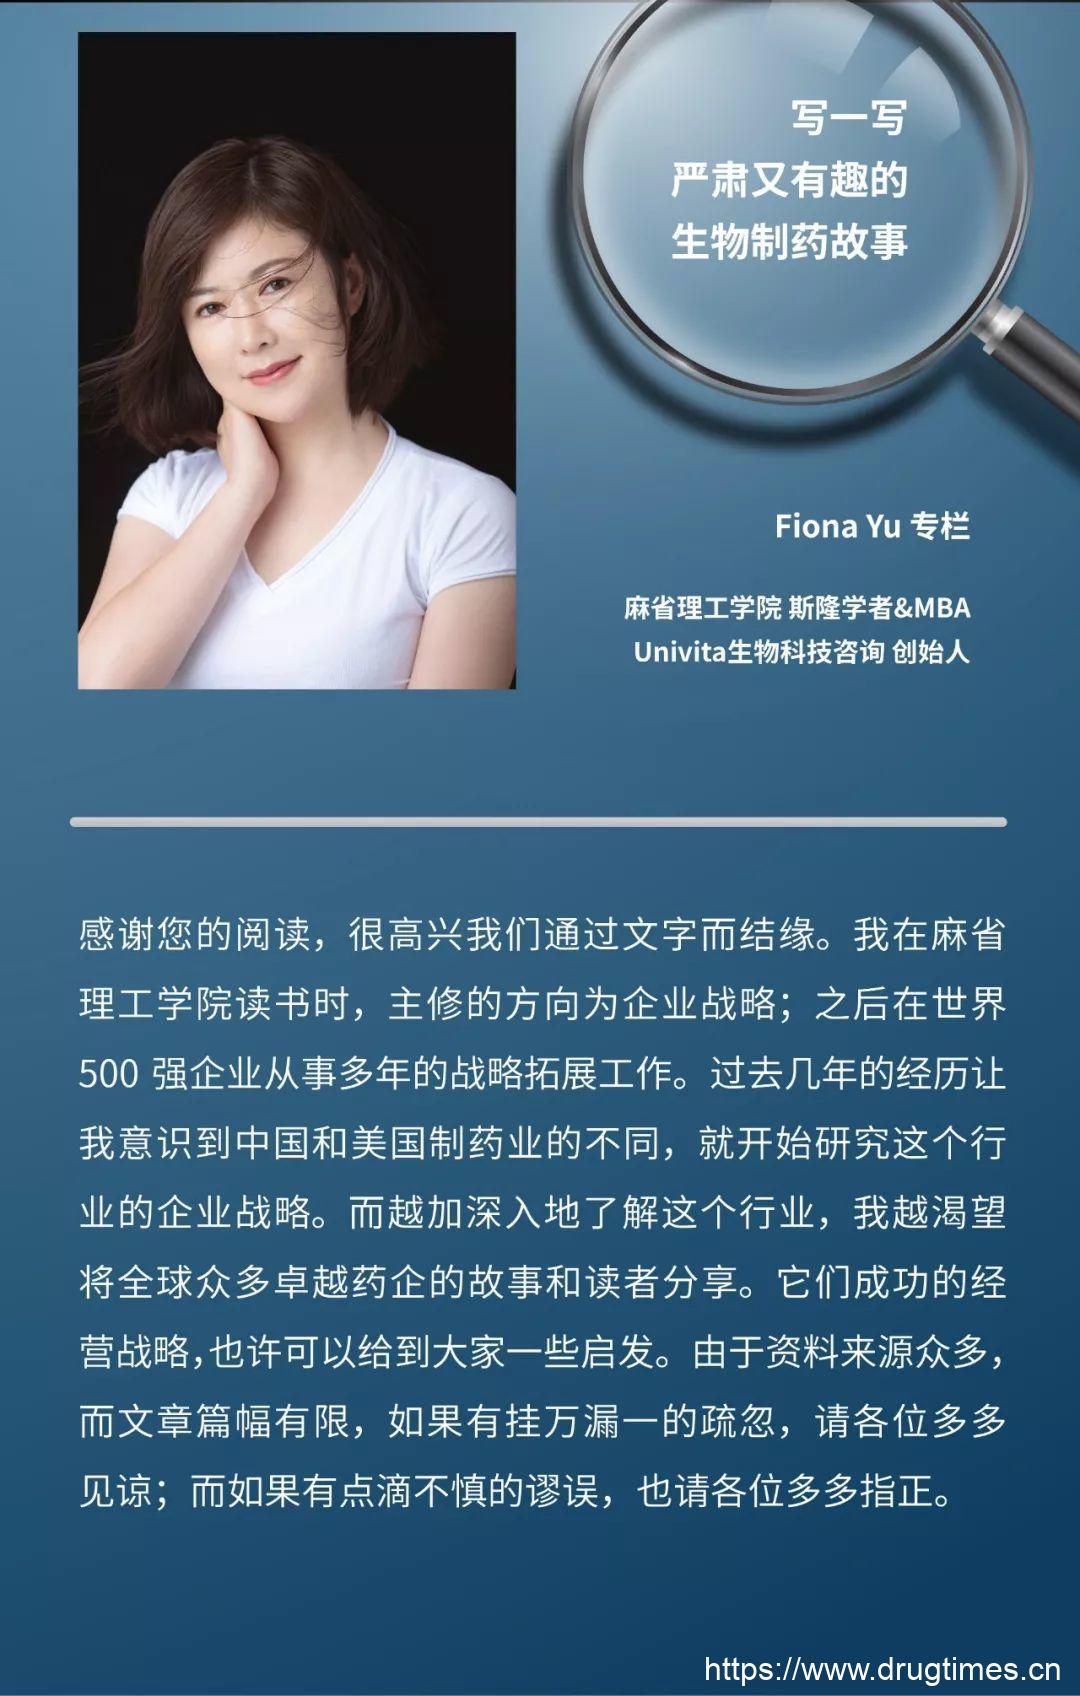 Fiona Yu专栏 | 在转型中纠缠的拜耳 (Bayer)